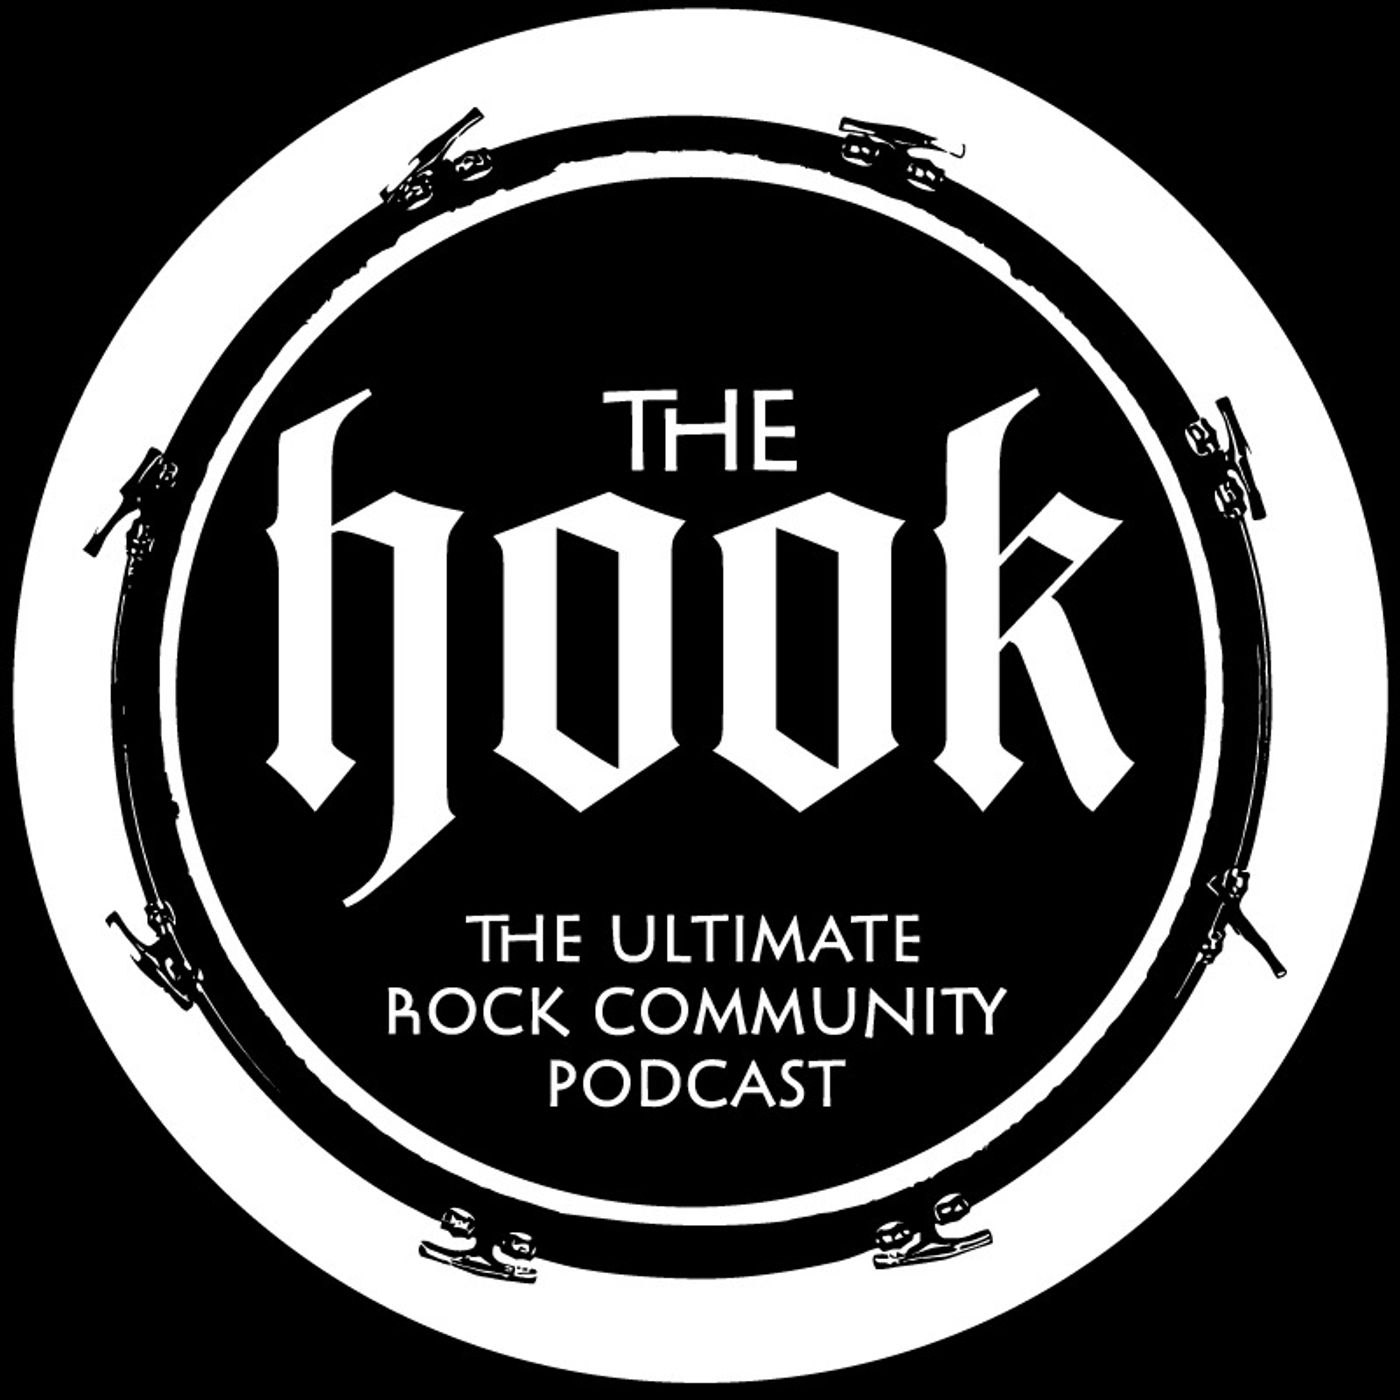 The Hook Rocks!